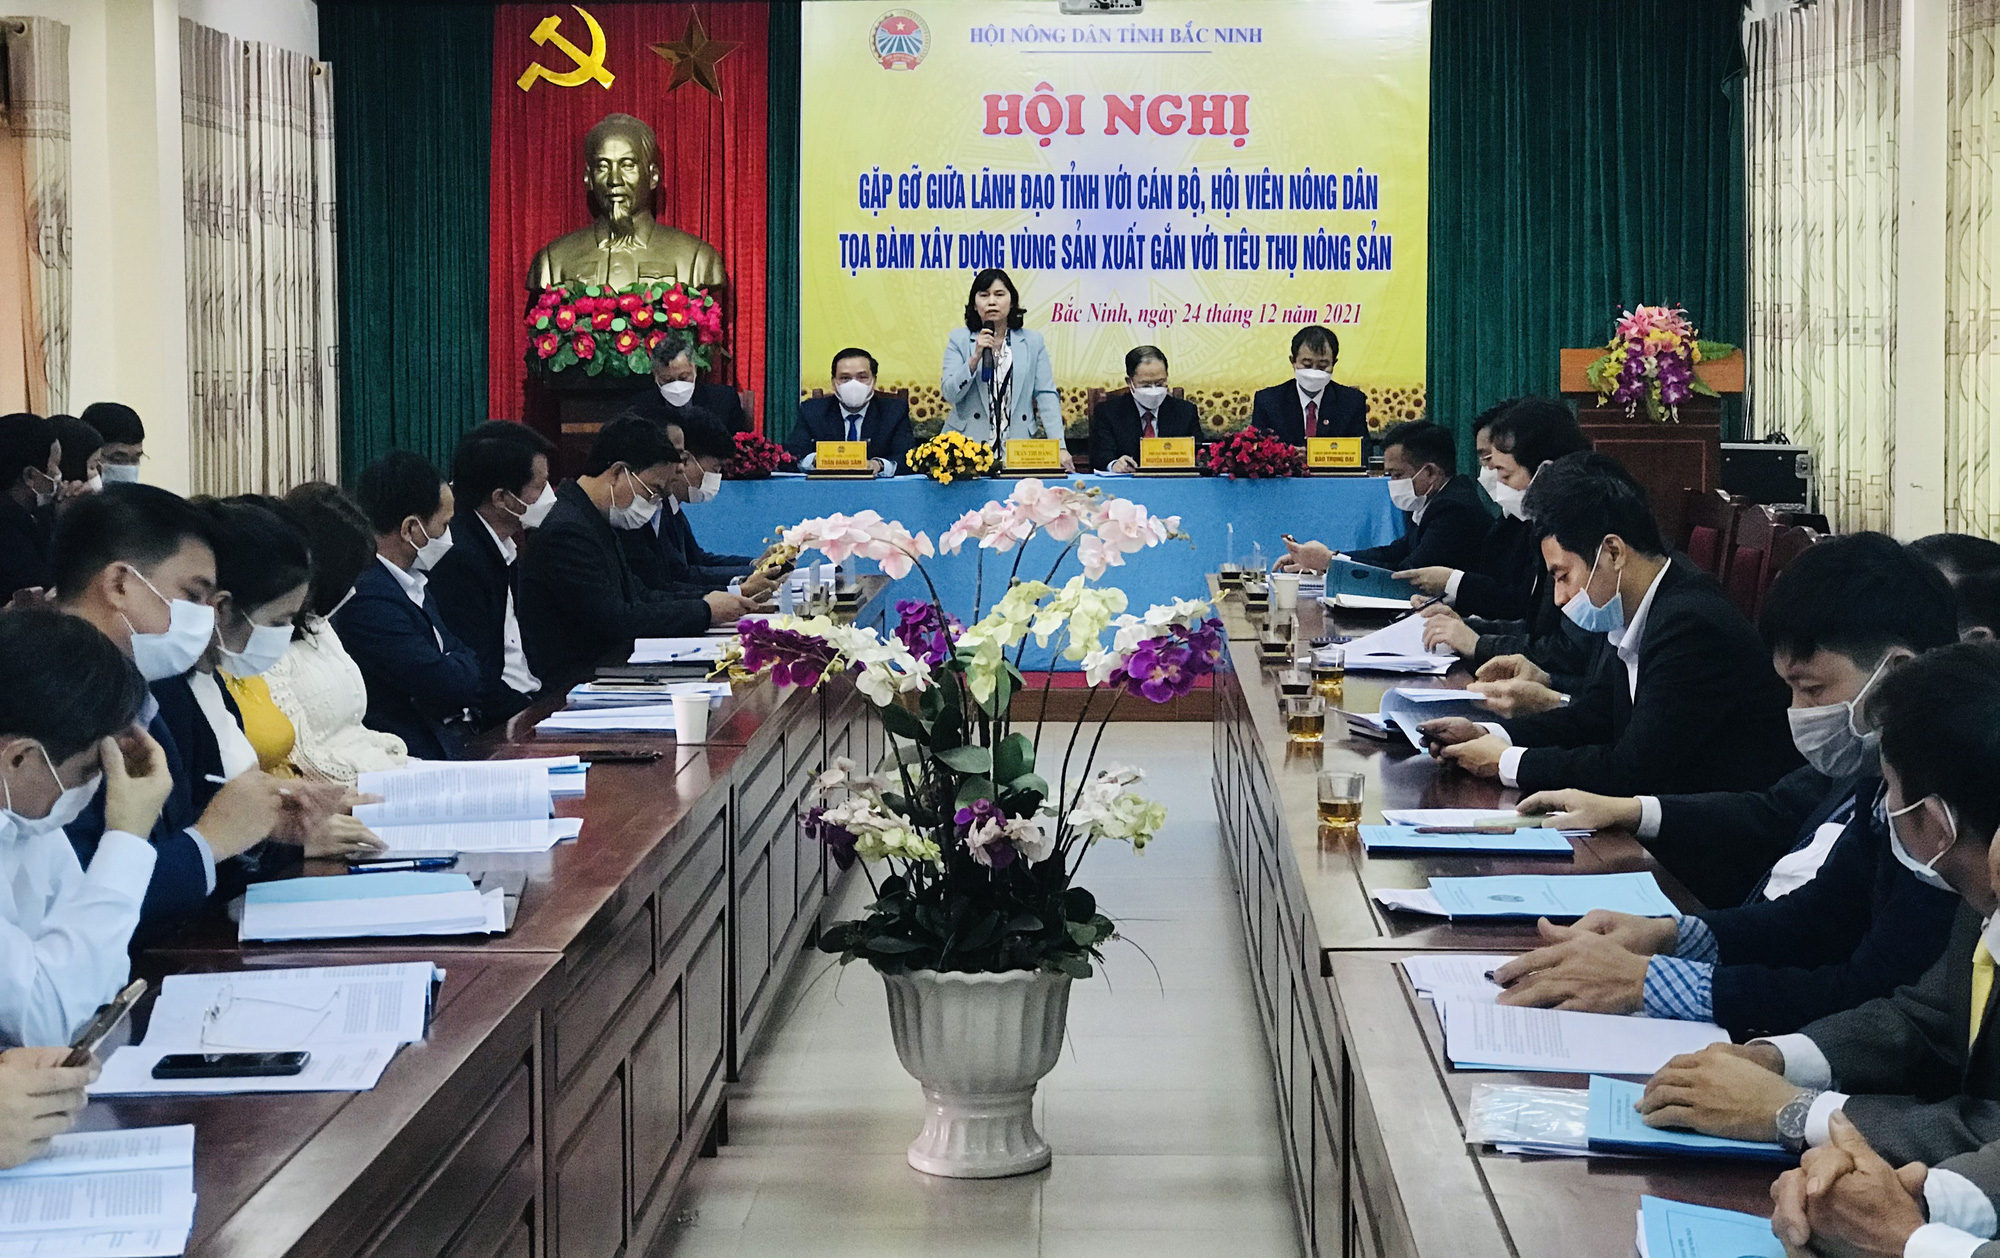 Bắc Ninh: Lãnh đạo tỉnh đối thoại, gỡ khó trong sản xuất nông nghiệp cho nông dân - Ảnh 1.